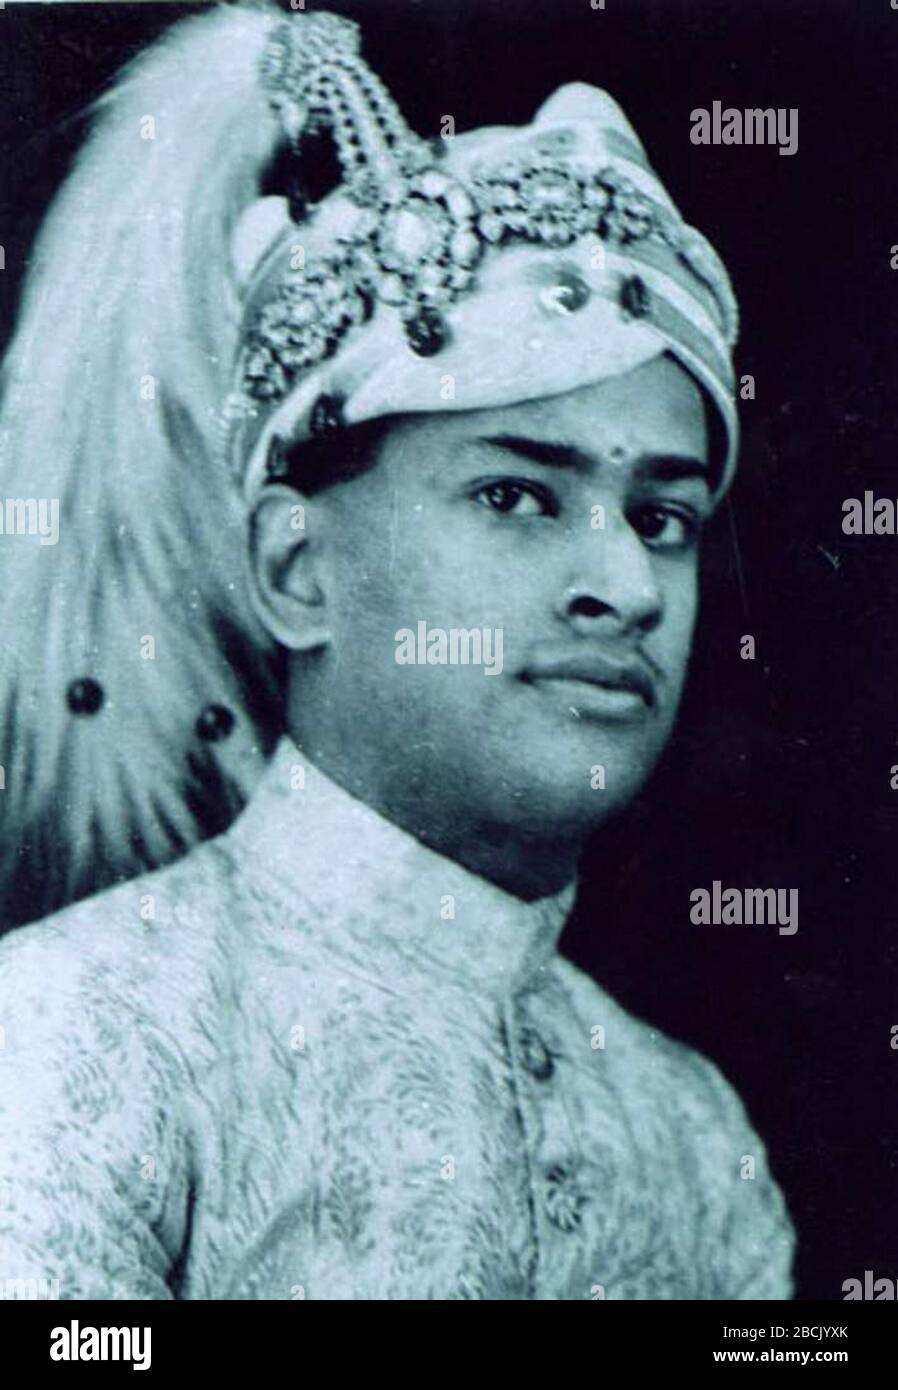 'Italiano: Questa è la fotografia dell'ultimo monarca dominante di Travancore, Maharajah Chitira Thirunal Balarama Varma preso nel 1938.; 1938; pubblicazione originale: Travancore Royal Palace fonte immediata: Ranker (http://www.ranker.com/pics/N720597/chithira-thirunal-balarama-varma-all-people-photo-u2); autore sconosciuto; ' Foto Stock